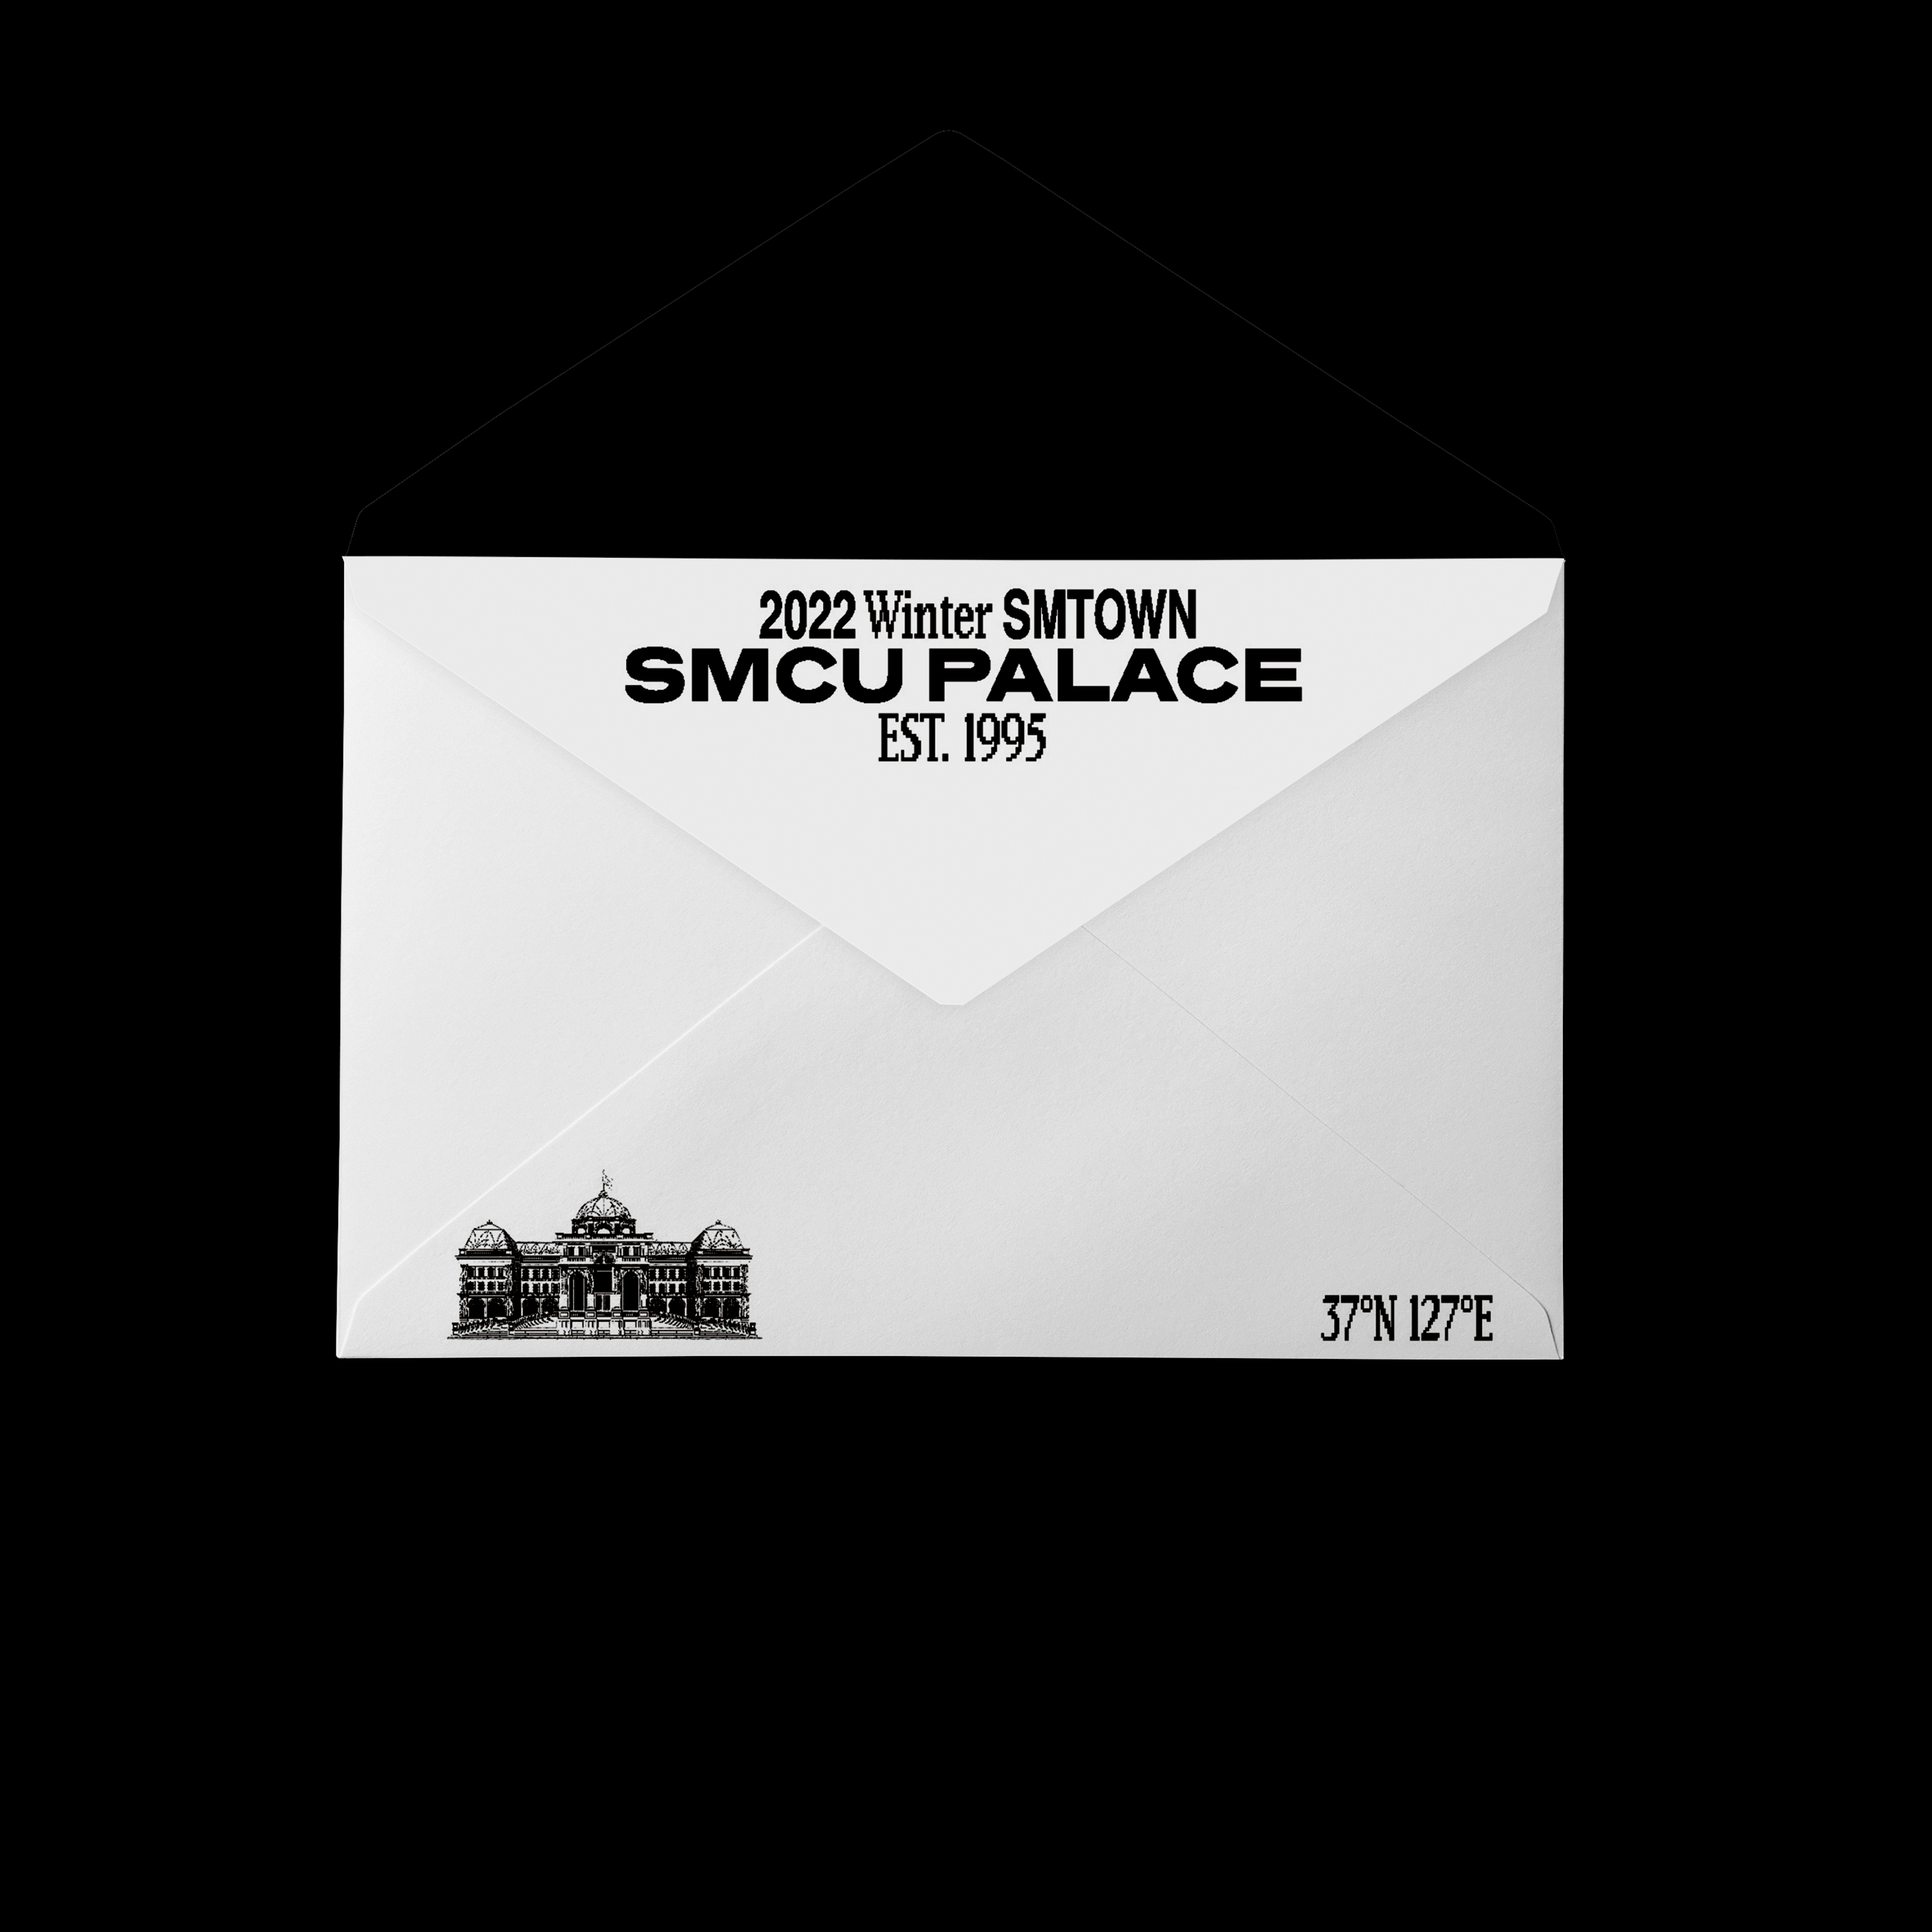 [全款 裸专] TVXQ! - 2022 Winter SMTOWN : SMCU PALACE (GUEST. TVXQ!) (Membership Card Ver.) _kpop散粉收容所